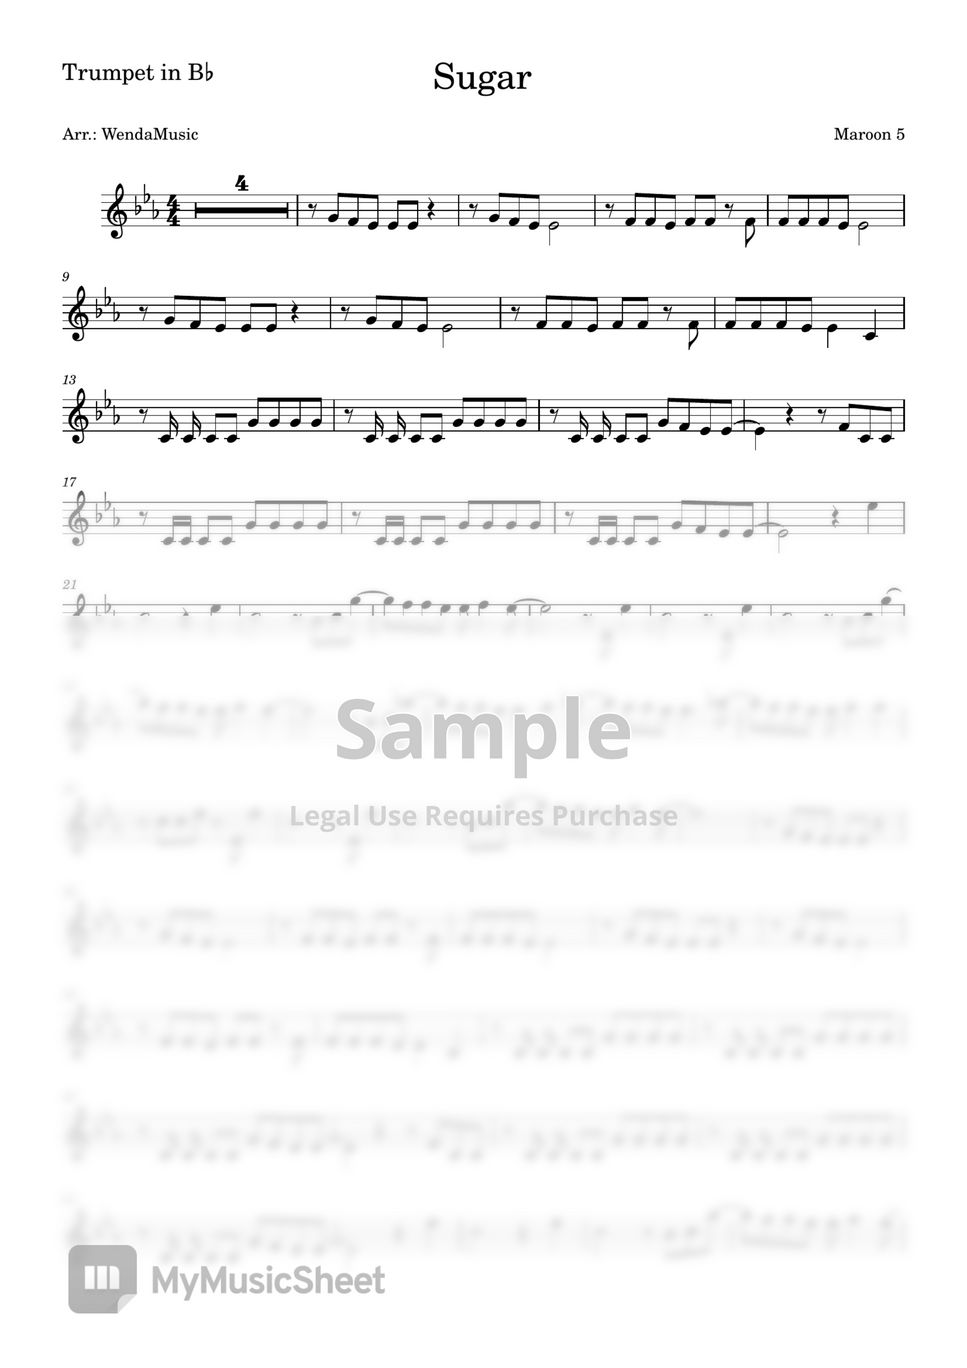 Maroon 5 - Sugar (Trumpet in B♭) by WendaMusic